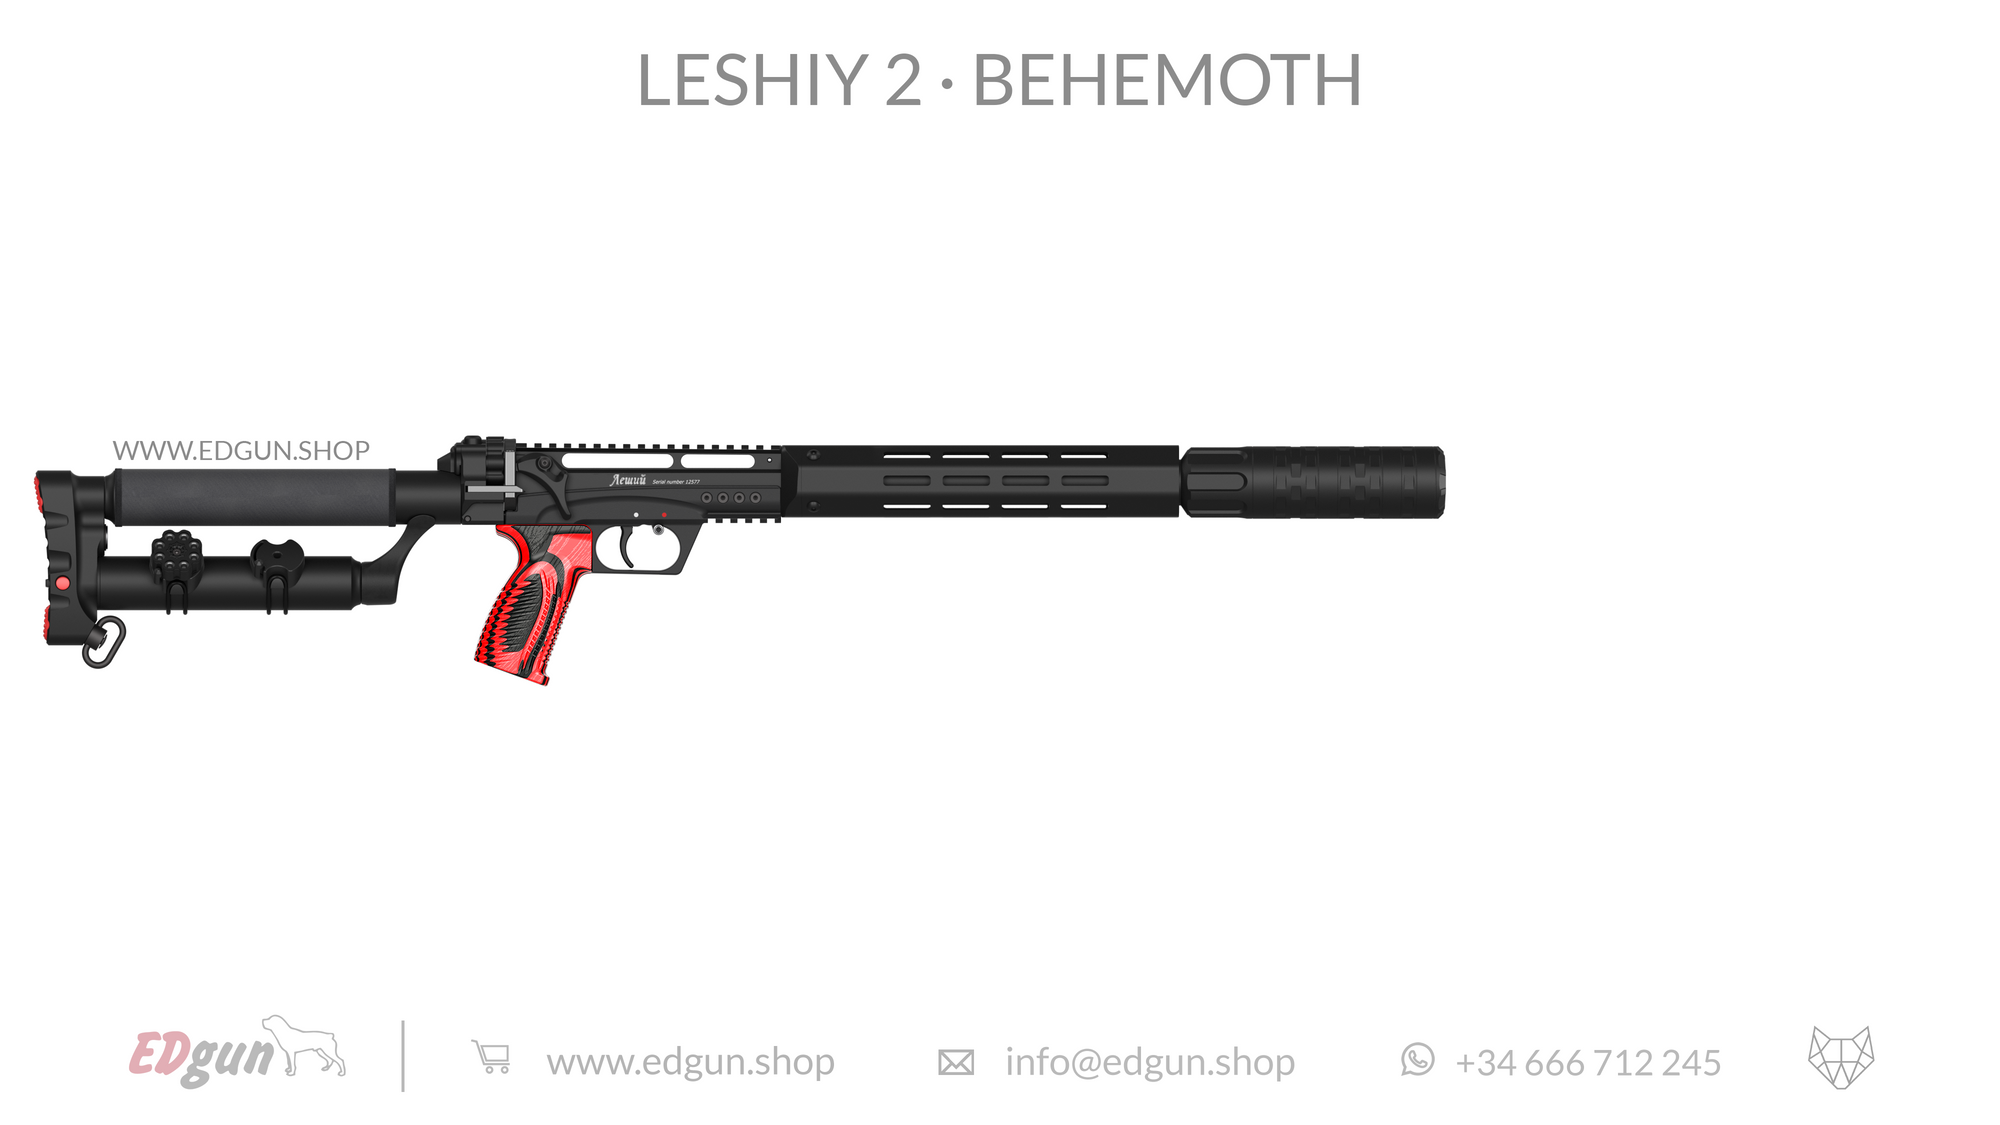 Leshiy 2 Behemoth Reflex